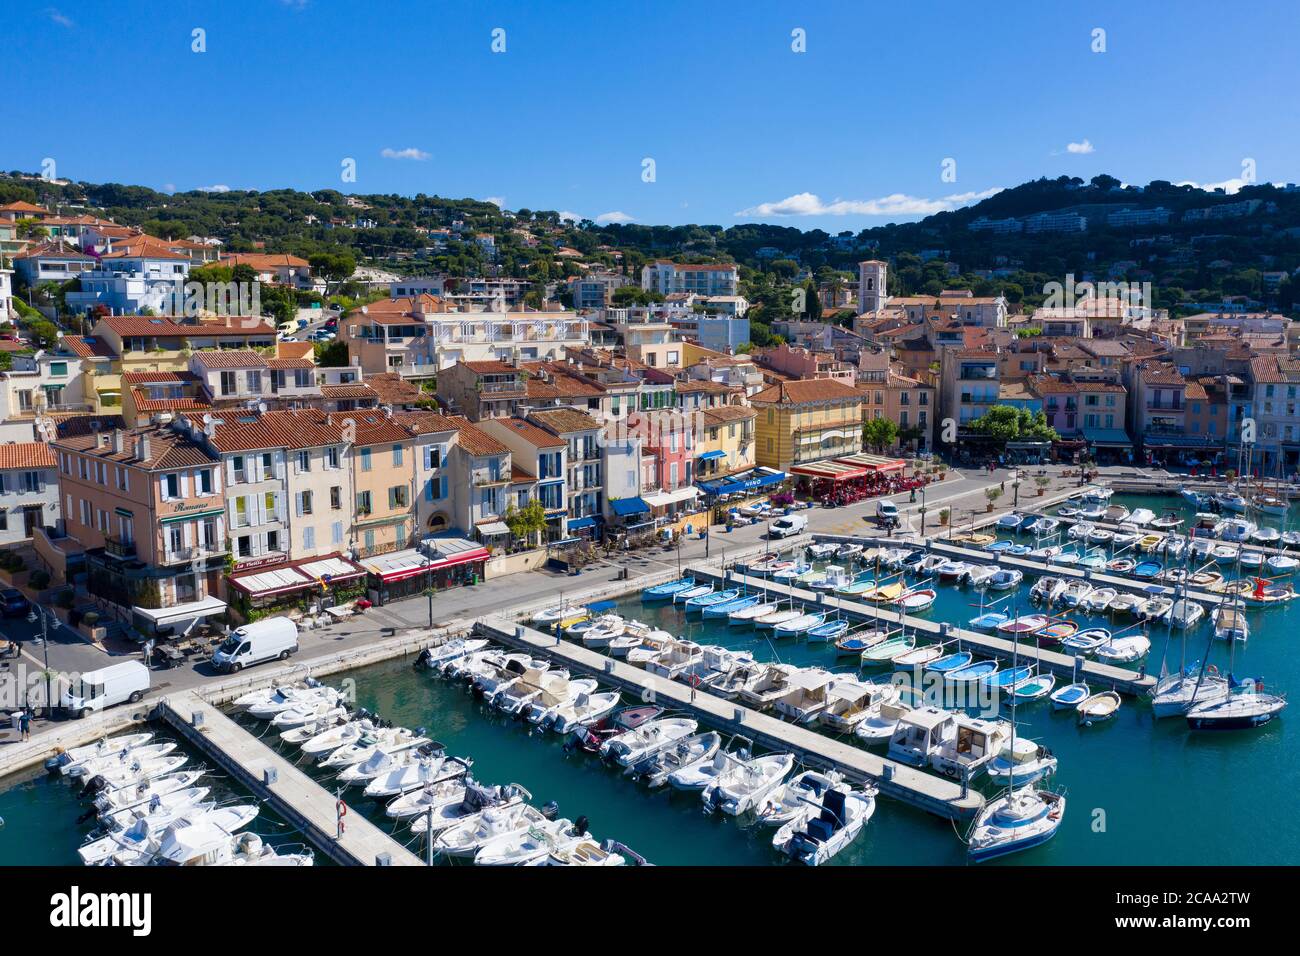 Vista aérea de Cassis, un pueblo de pescadores situado cerca de Marsella Foto de stock